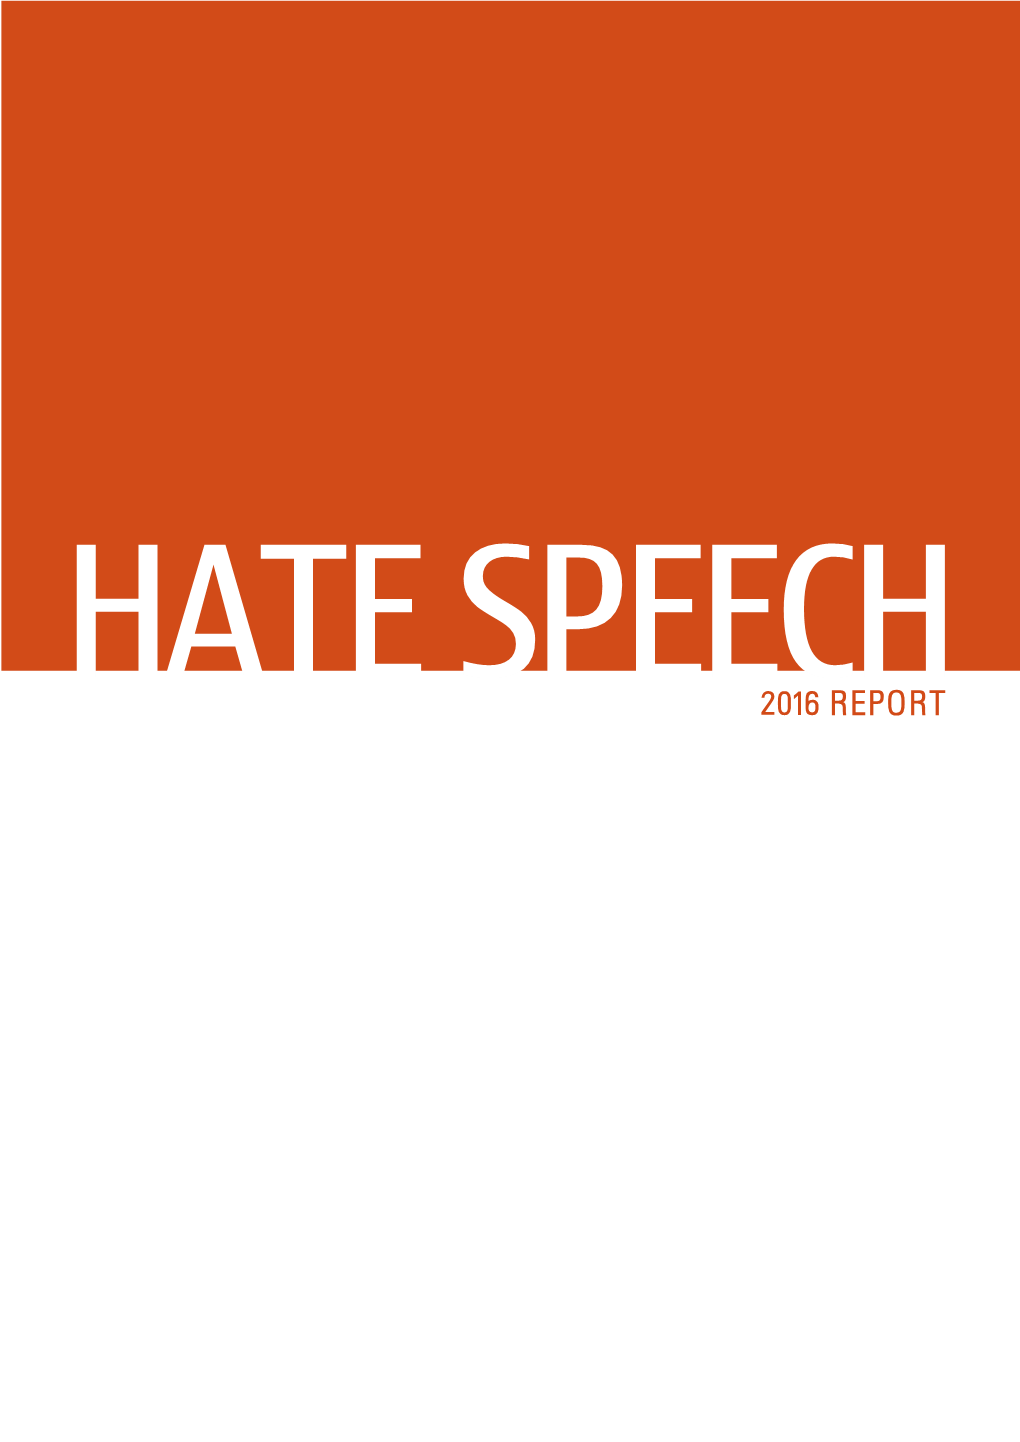 Hate Speech, 2016